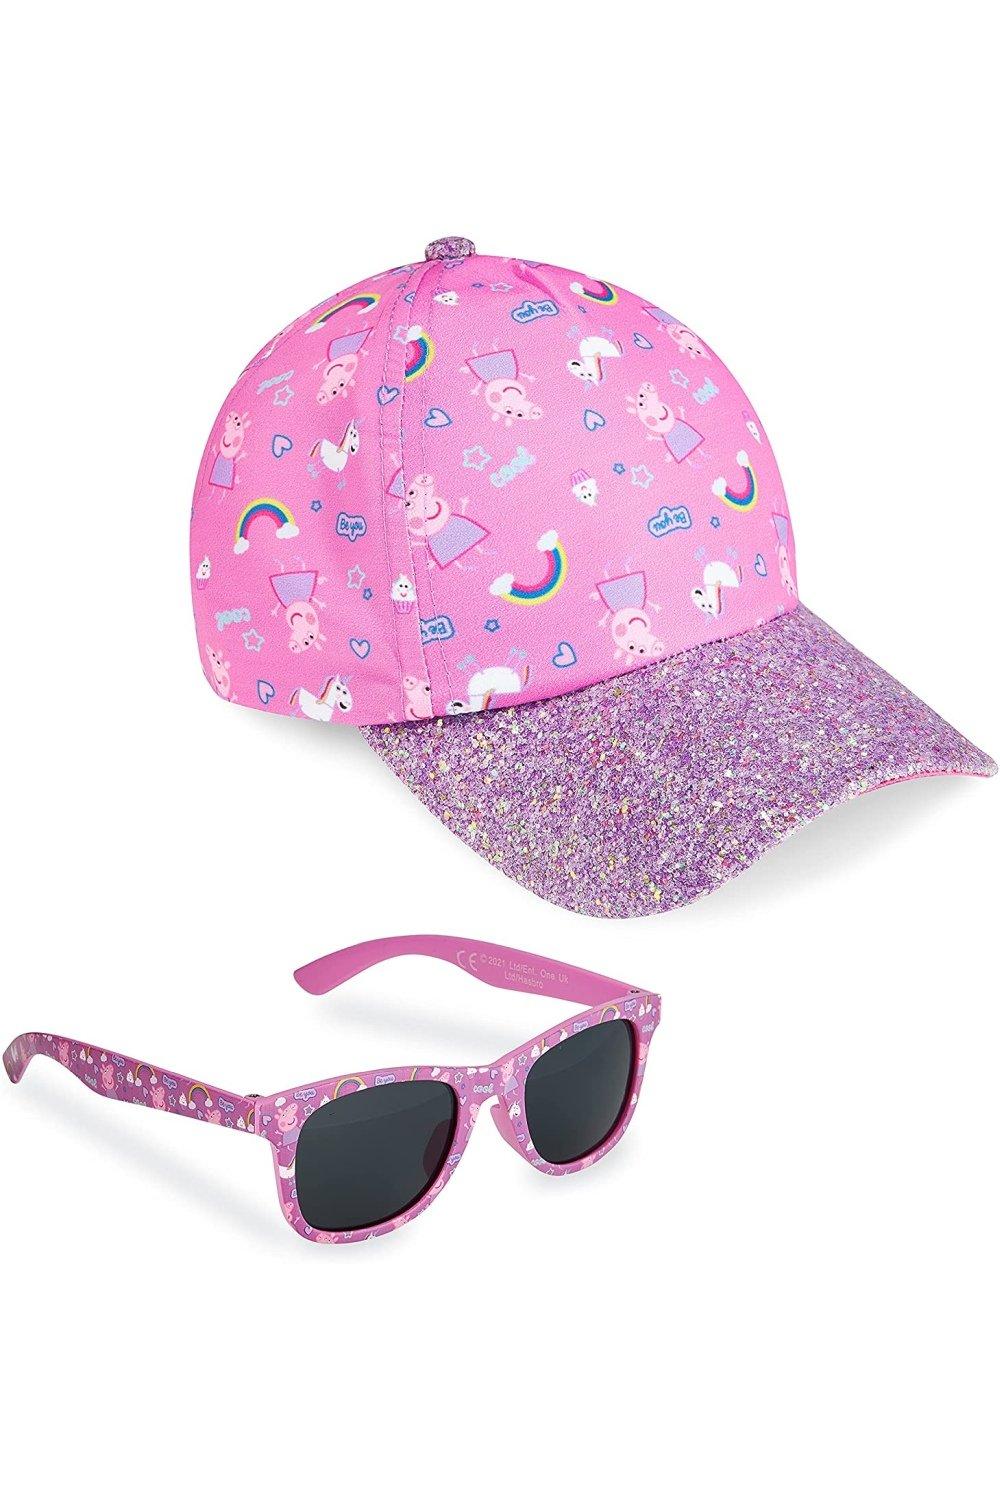 Кепка и солнцезащитные очки Peppa Pig, розовый набор игрушек свинка пеппа peppa pig